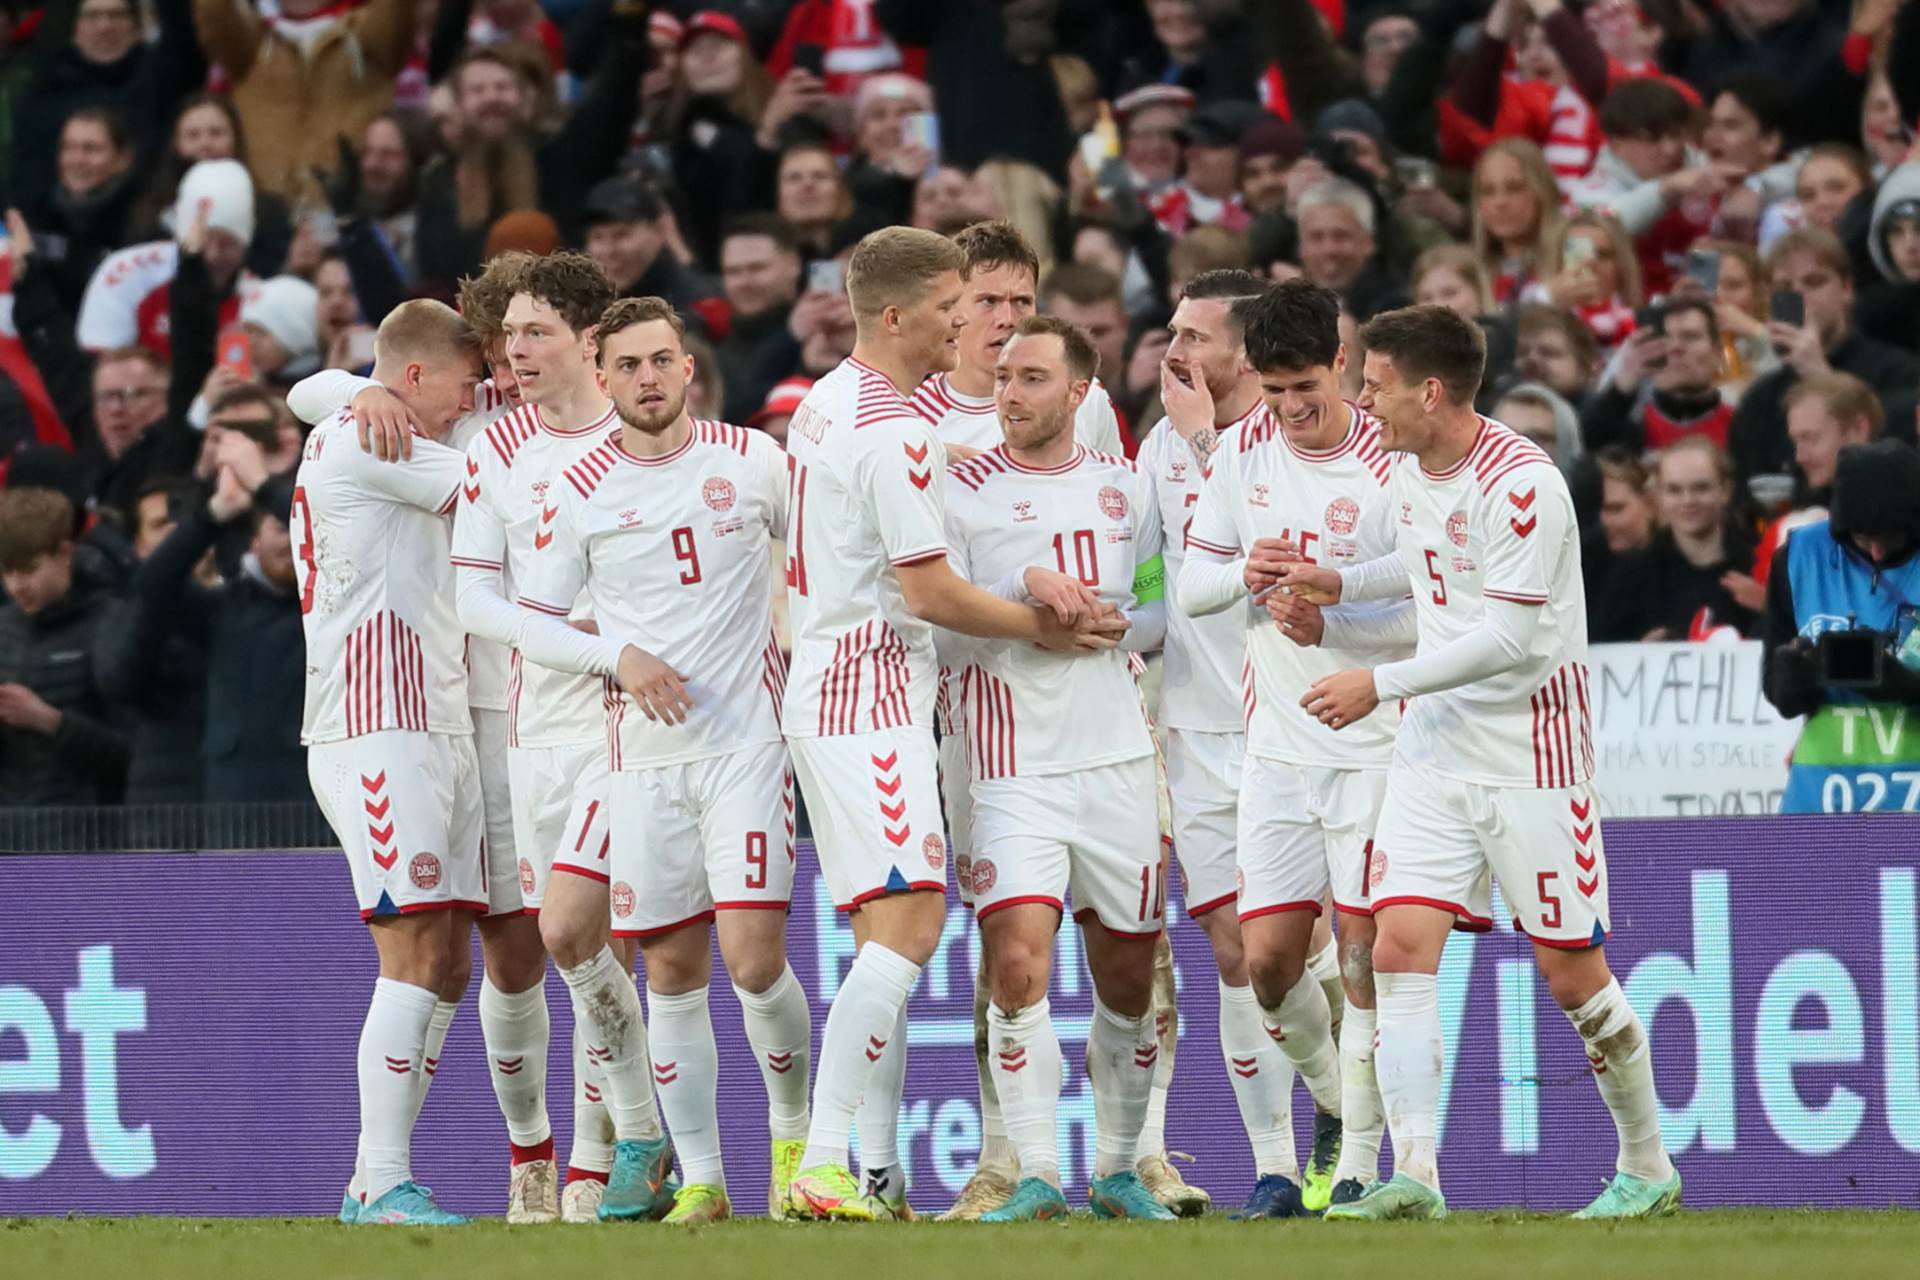  Danska razmišlja da napusti FIFA zbog zabrane kapitenskih traka 